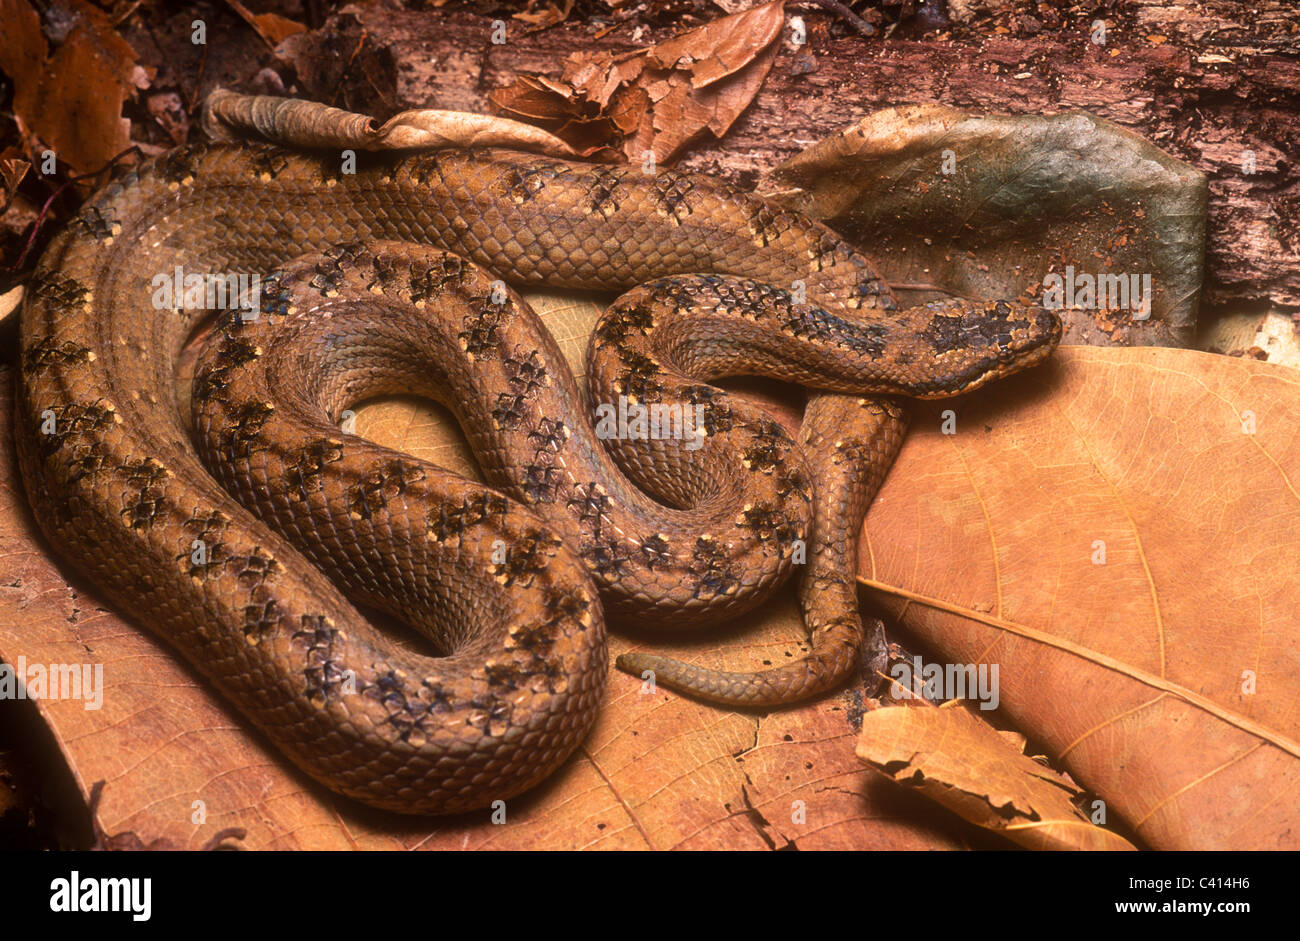 Cuban wood snake, Tropidophis melanurus, Cuba Stock Photo